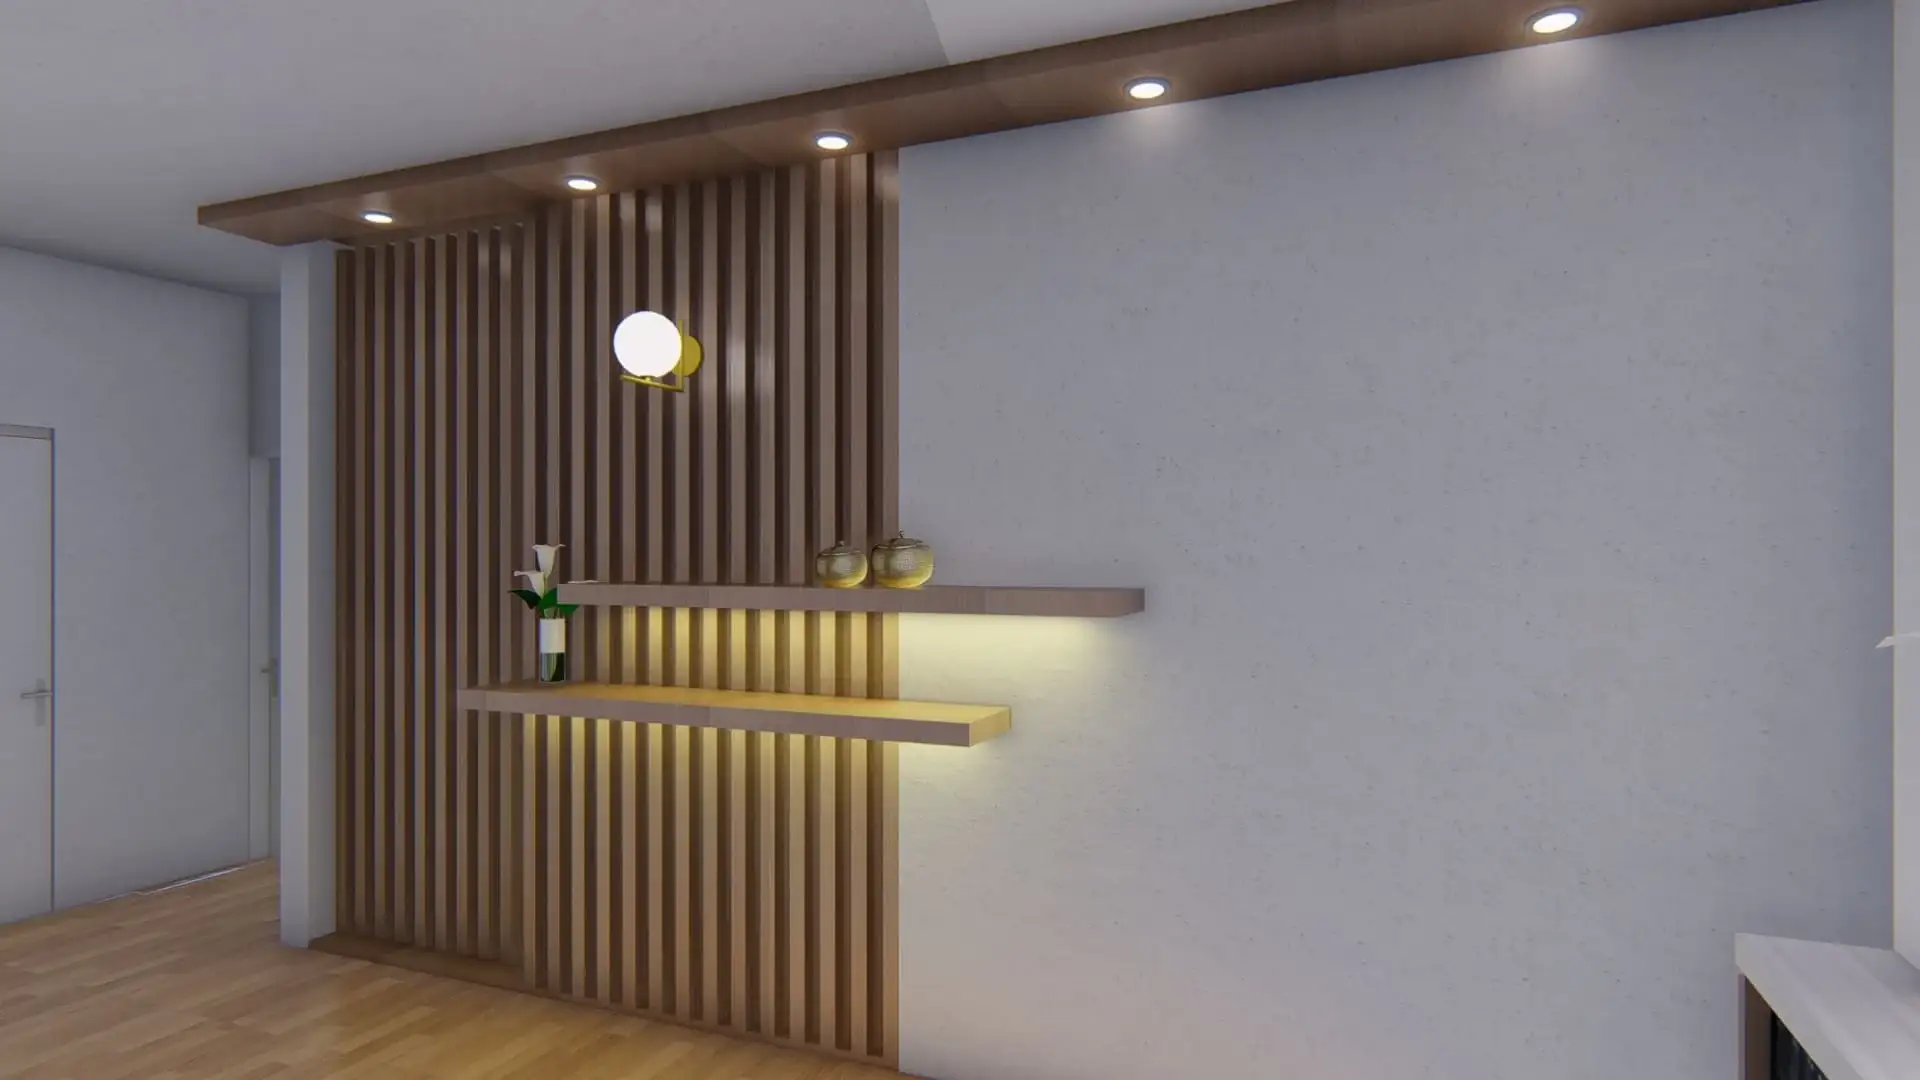 sala minimalista de madera desde otro angulo